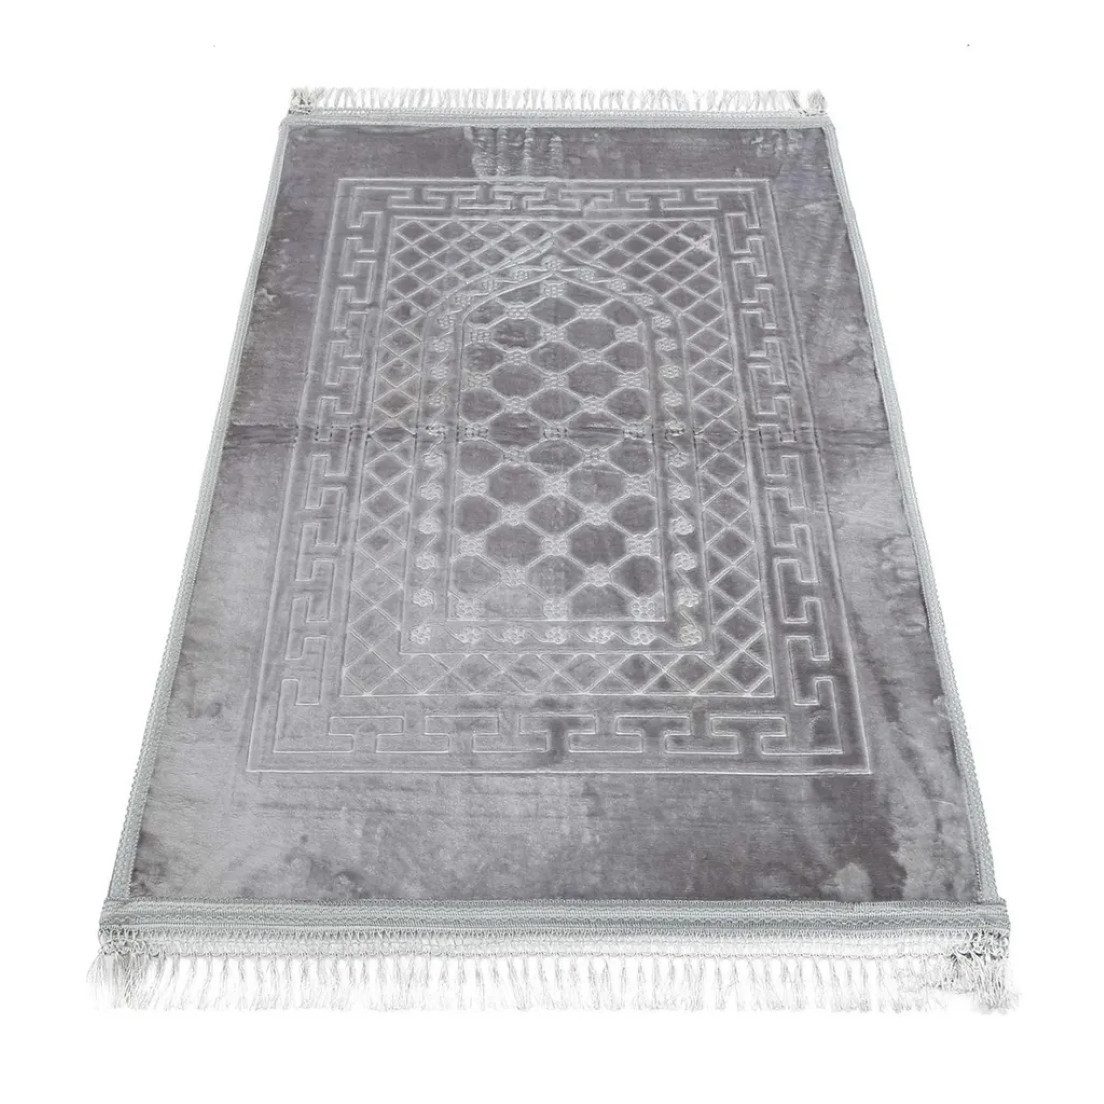 Designteppich Gebetsteppich gepolsterte Teppich Dick Weich 80 x 120 cm aus Polyester, Last Home